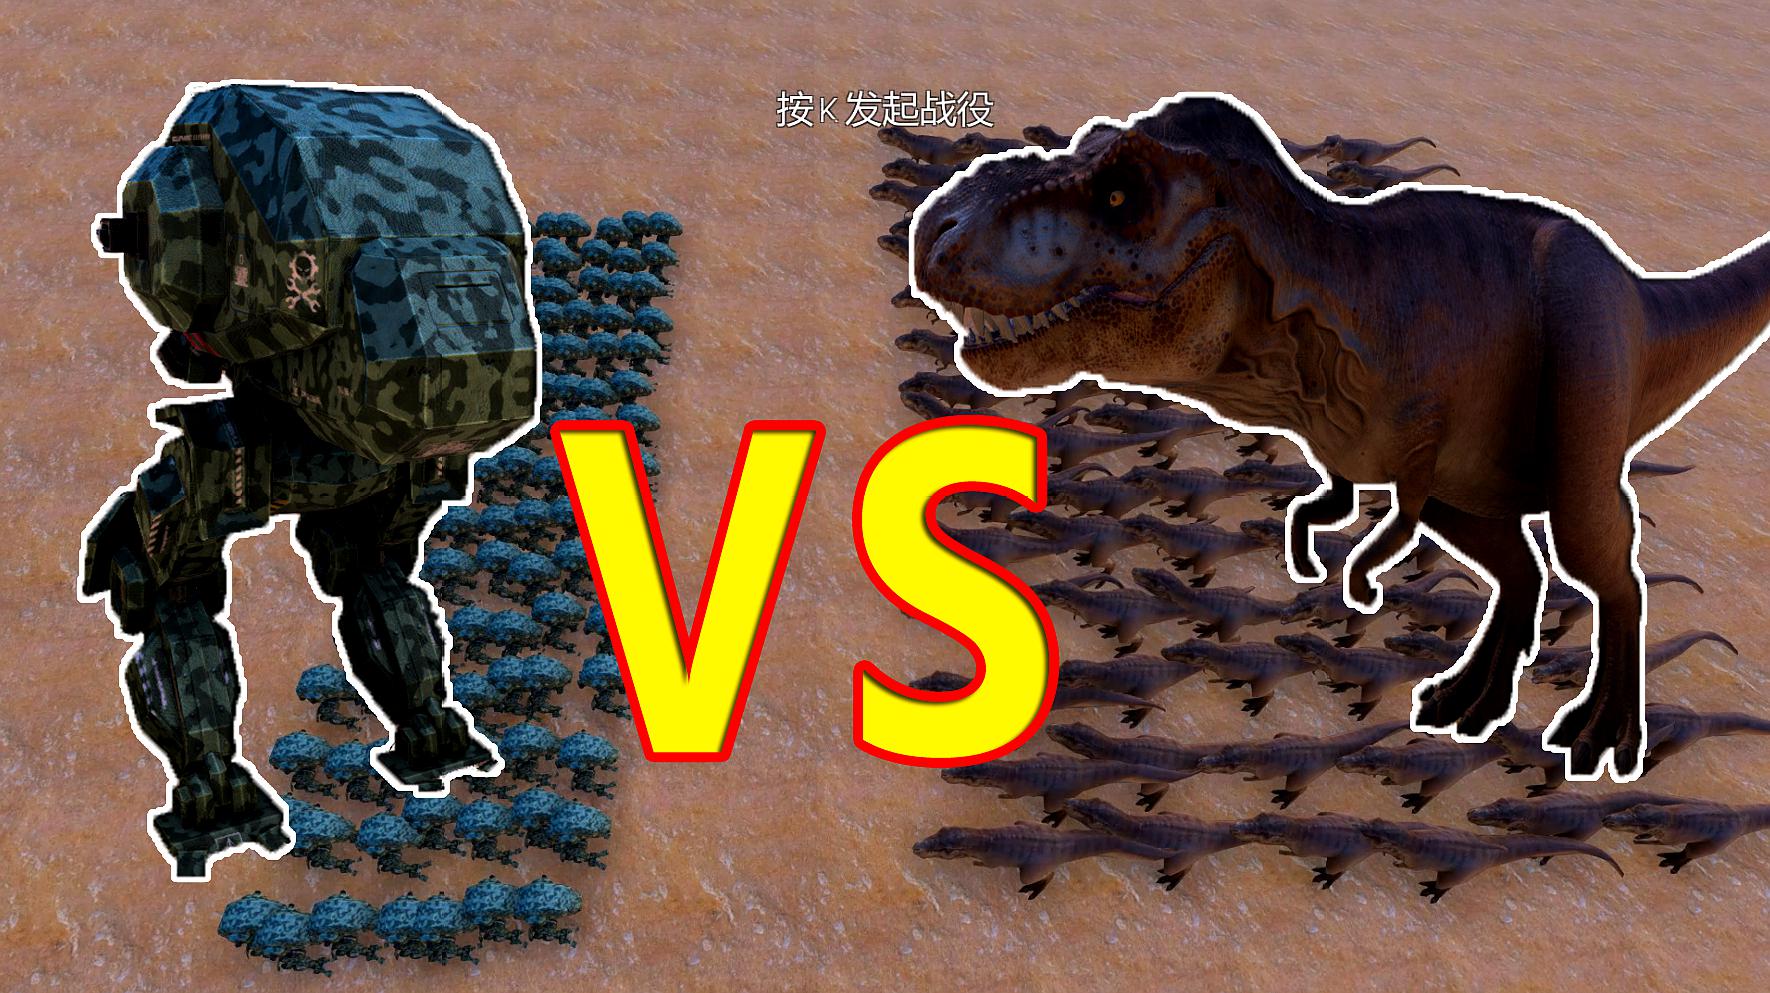 恐龙战争电脑版 游戏_恐龙战争电脑版游戏怎么玩_恐龙战争下载安装